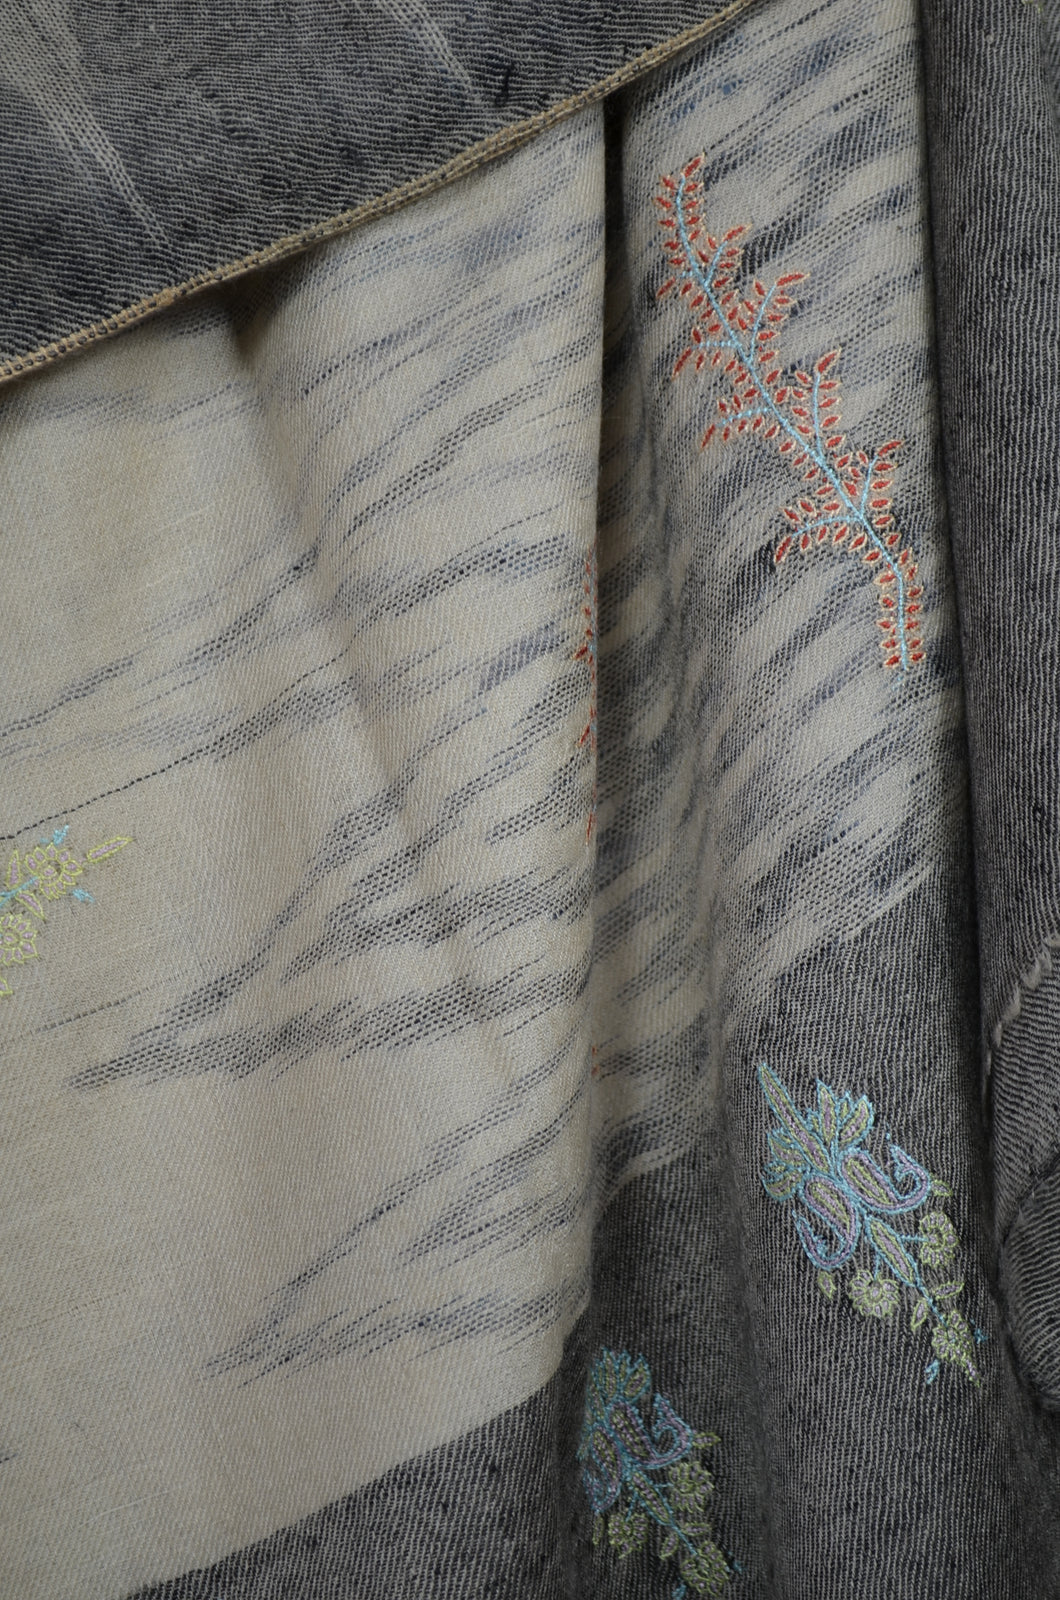 Grey & Ivory Ikat Pattern Motif Embroidery Pashmina Cashmere Shawl